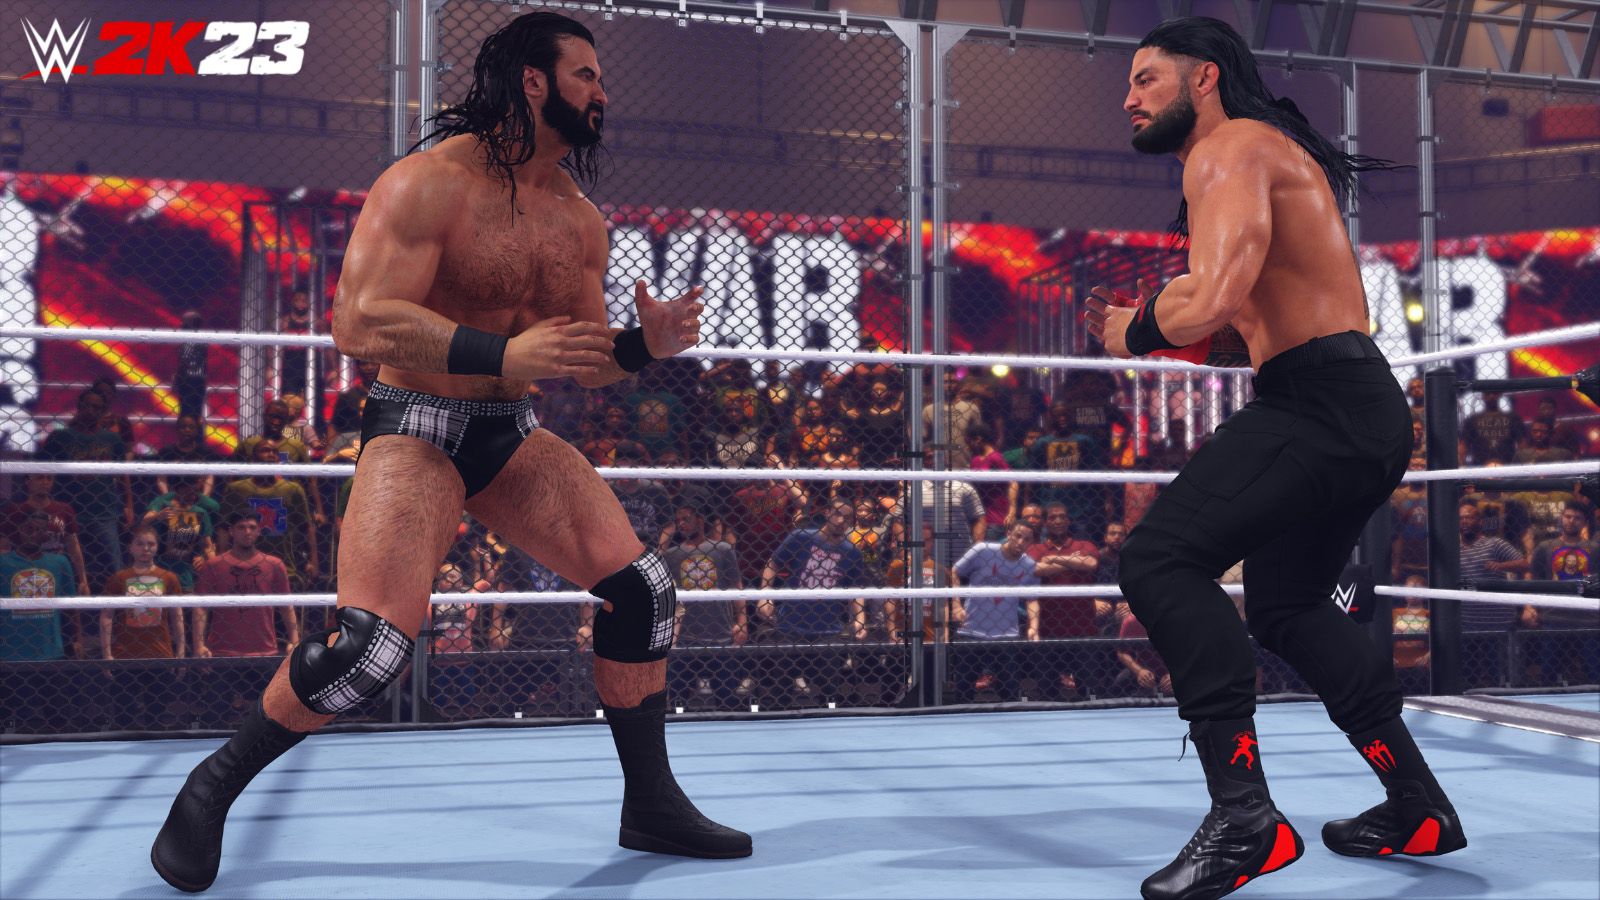 Une capture d'écran de Romen Reigns et Drew McIntyre face à face dans une cage dans WWE 2K23.